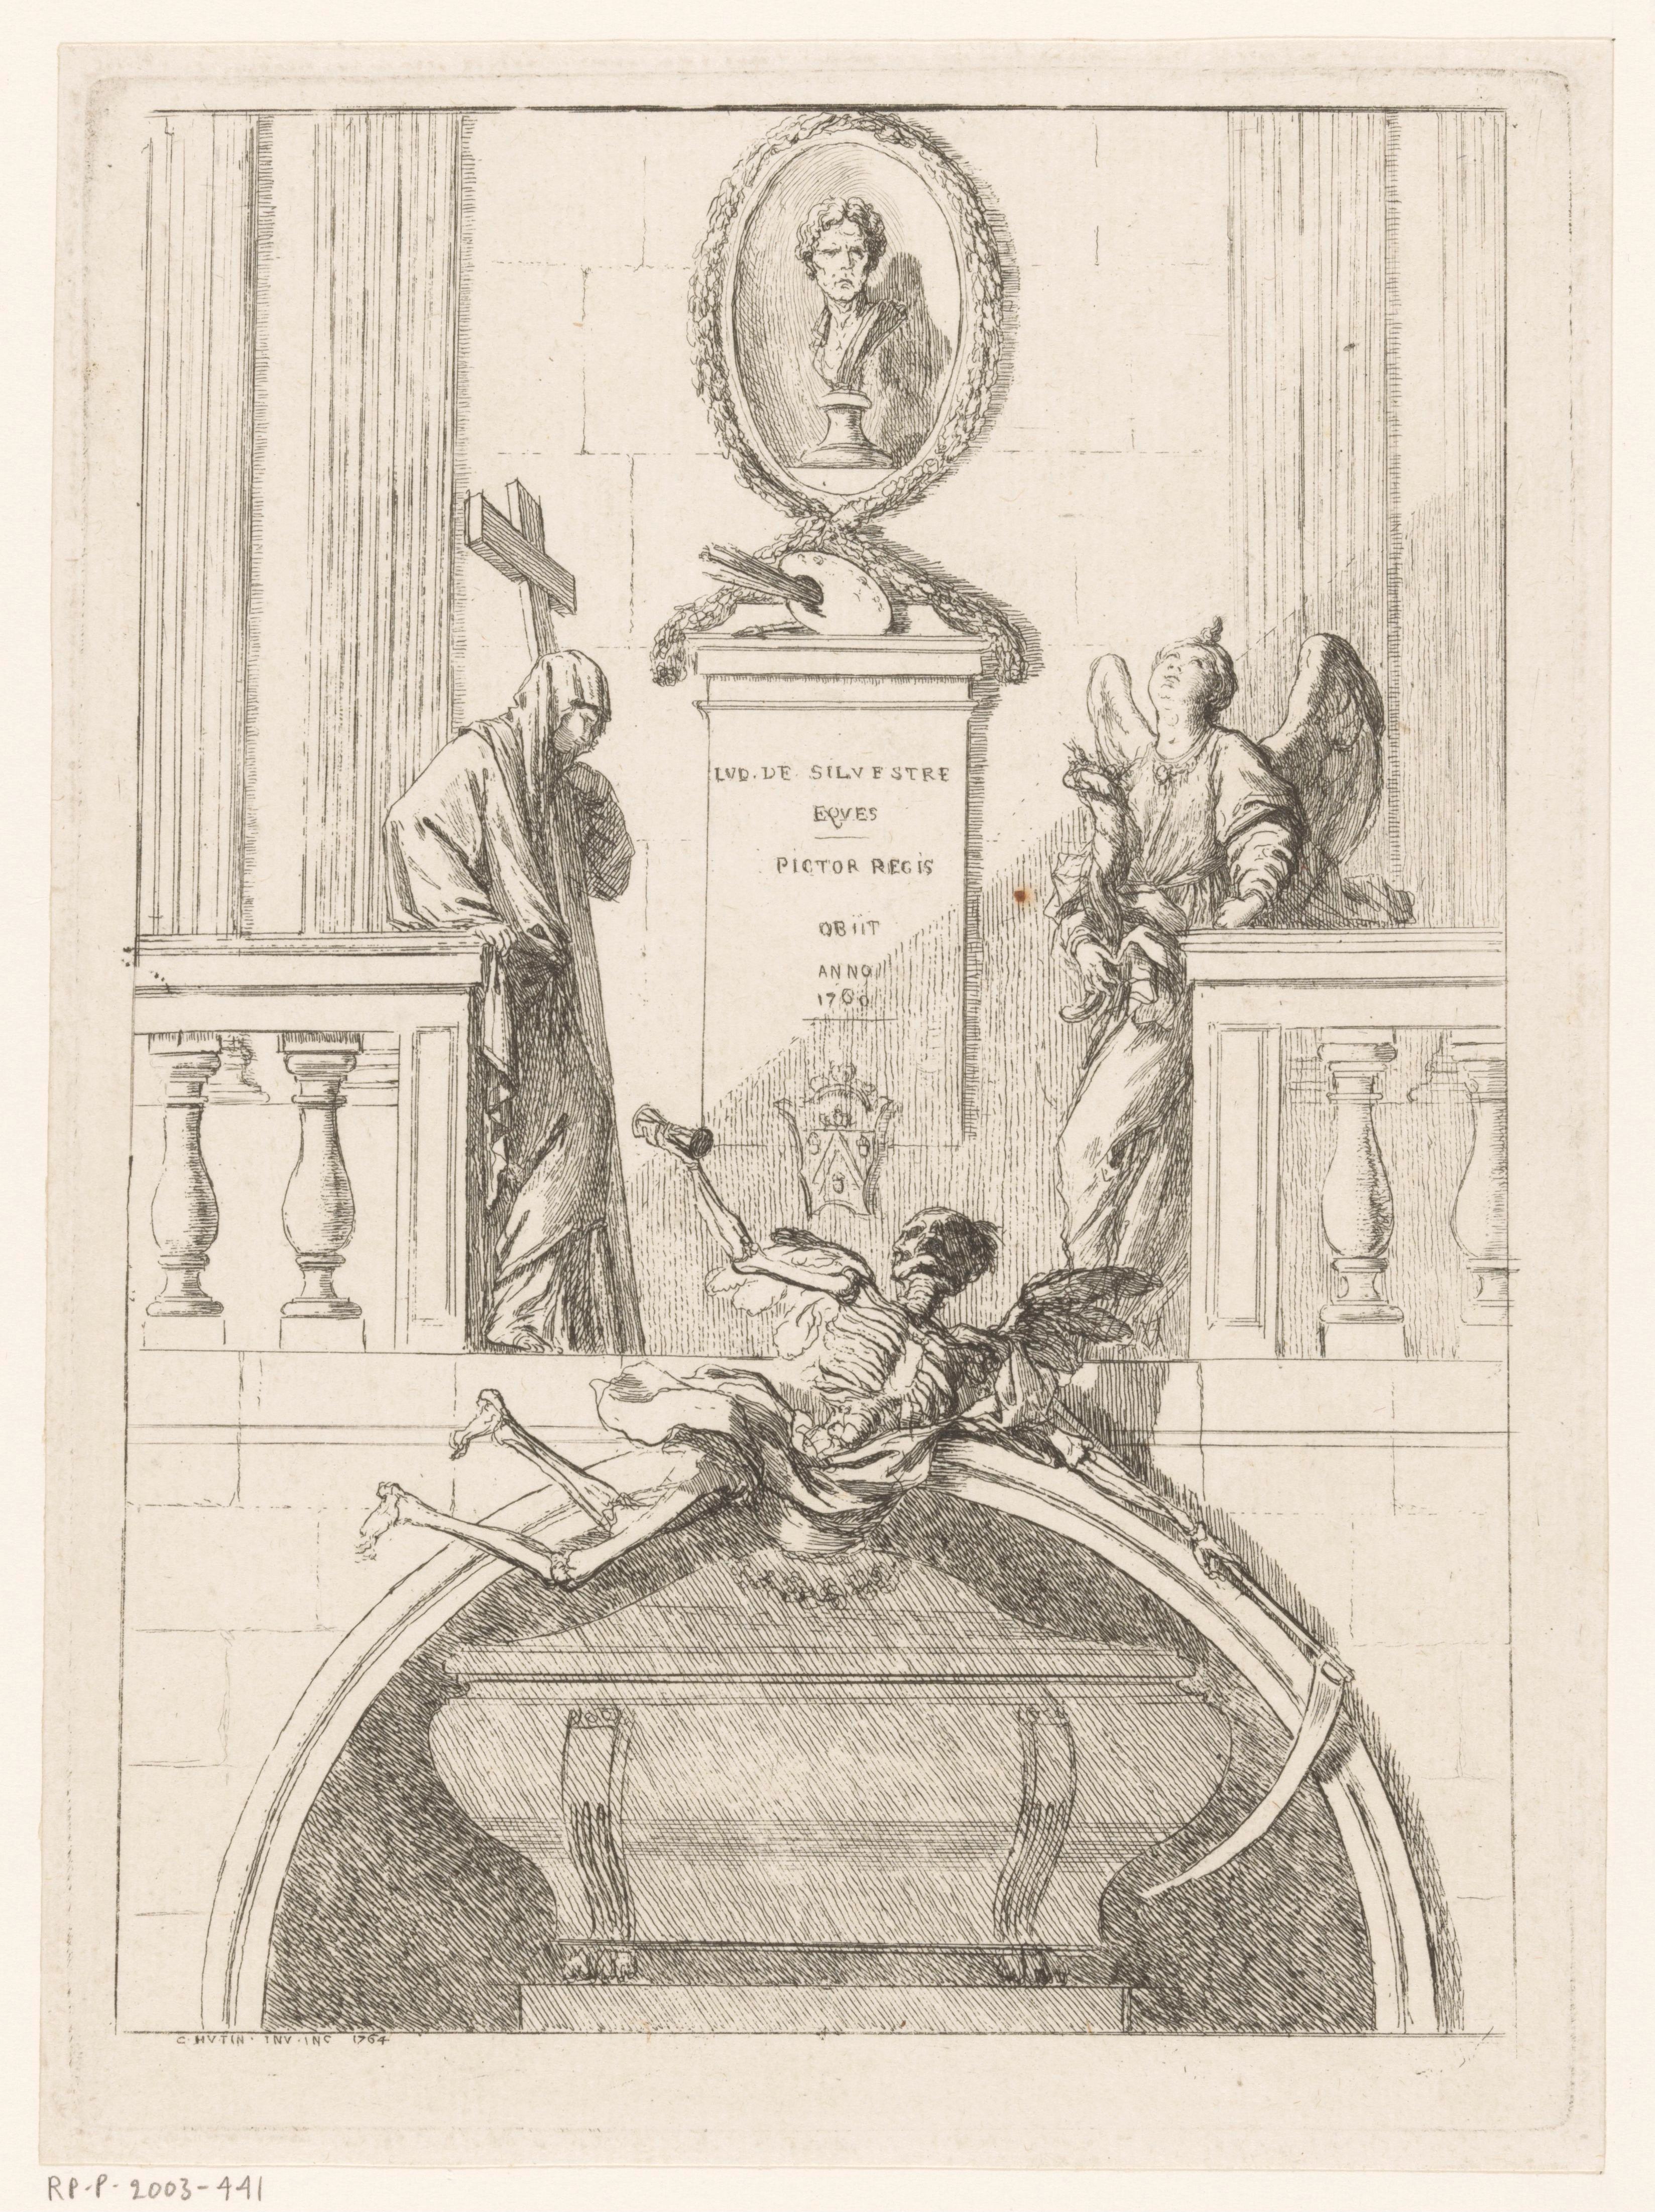 Projet de monument funéraire pour Louis de SilvestreLud. de Silvestre
Eques
Pictor Regis
Obiit
Anno
1760

C Hutin Inv. Inc. 1764


Nous ignorons s'il fut réalisé.
